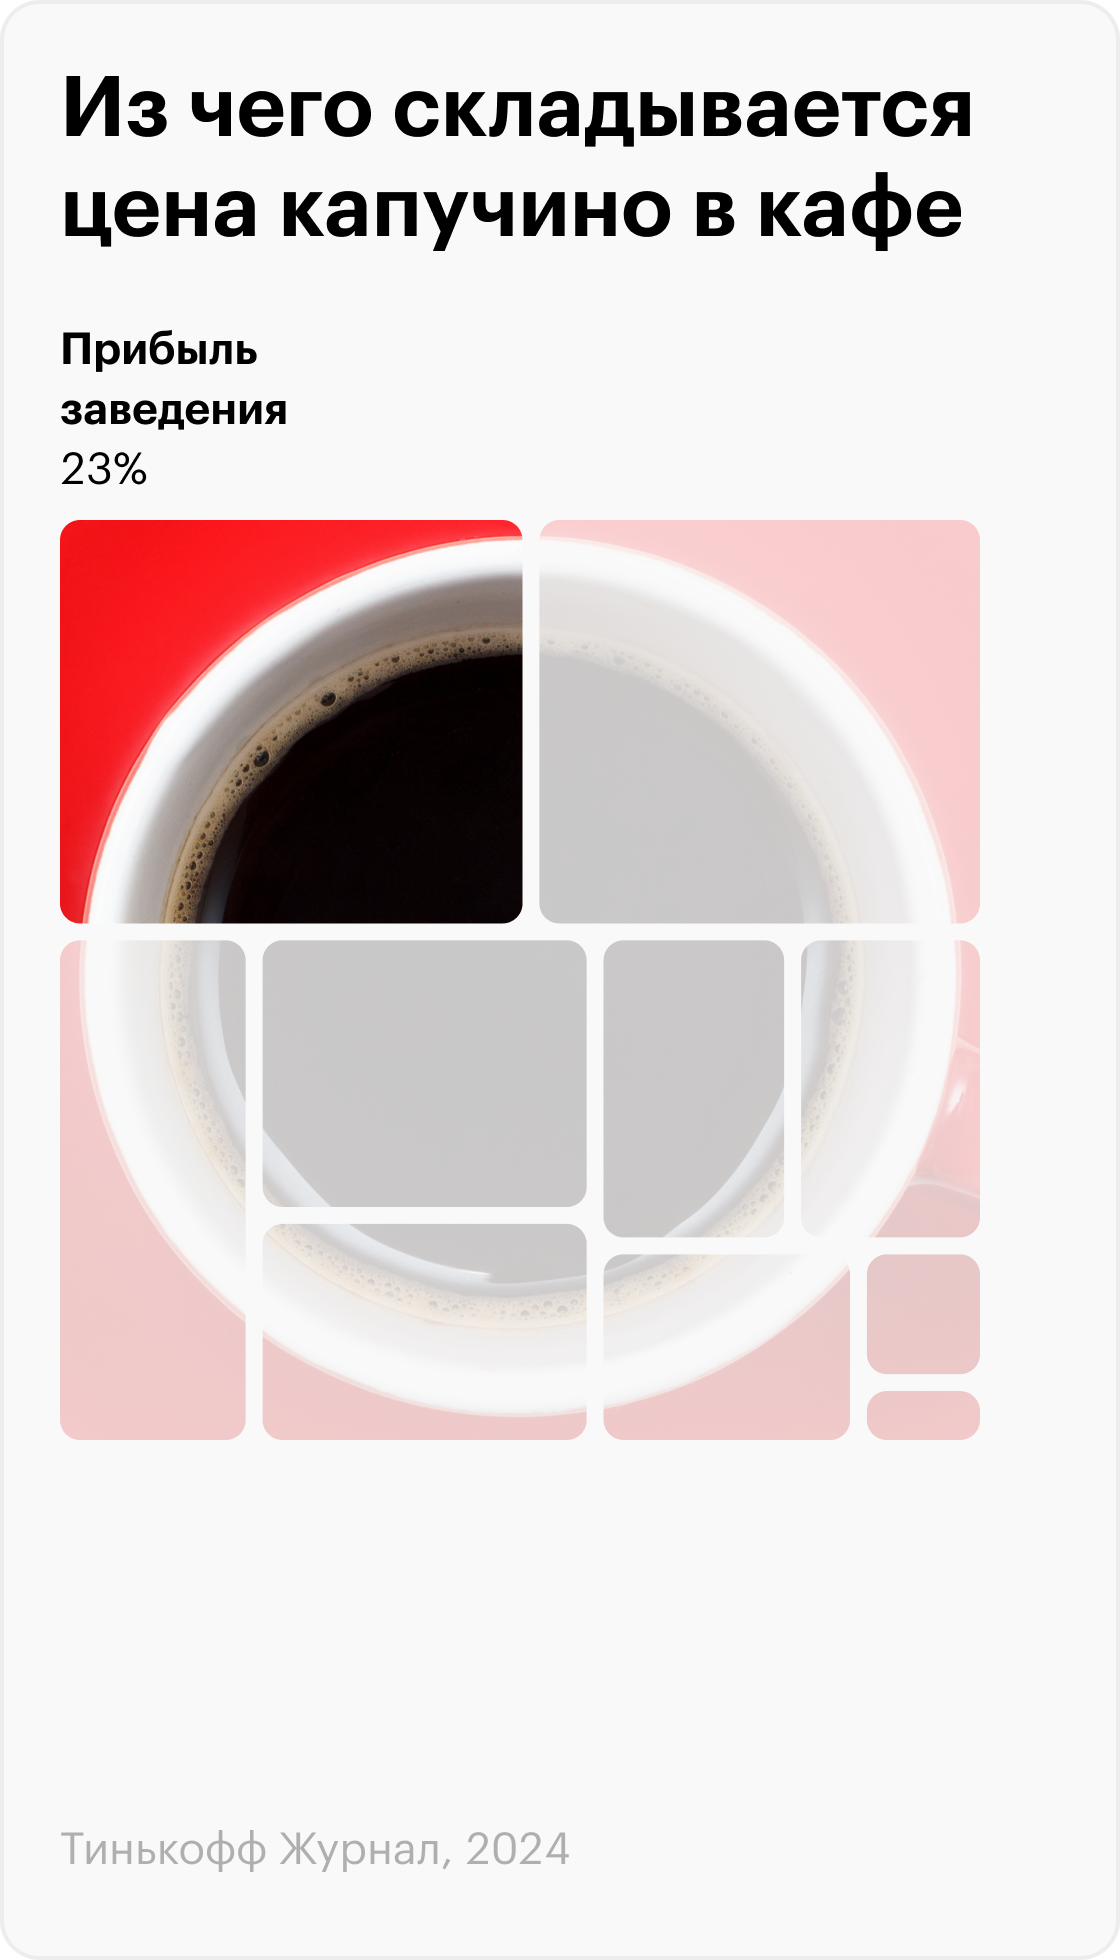 Для расчета мы использовали данные нескольких сетевых заведений: Green House, группы «Рестораны Дениса Иванова», Etlon Coffee, «Чайникофф», «Цех 85», Tut Coffee, True Cost. Структура расходов в разных точках общепита различается, поэтому мы усреднили значения. В качестве «эталонной чашки кофе» использовали стакан капучино — согласно статистике, это самый продаваемый вид кофе